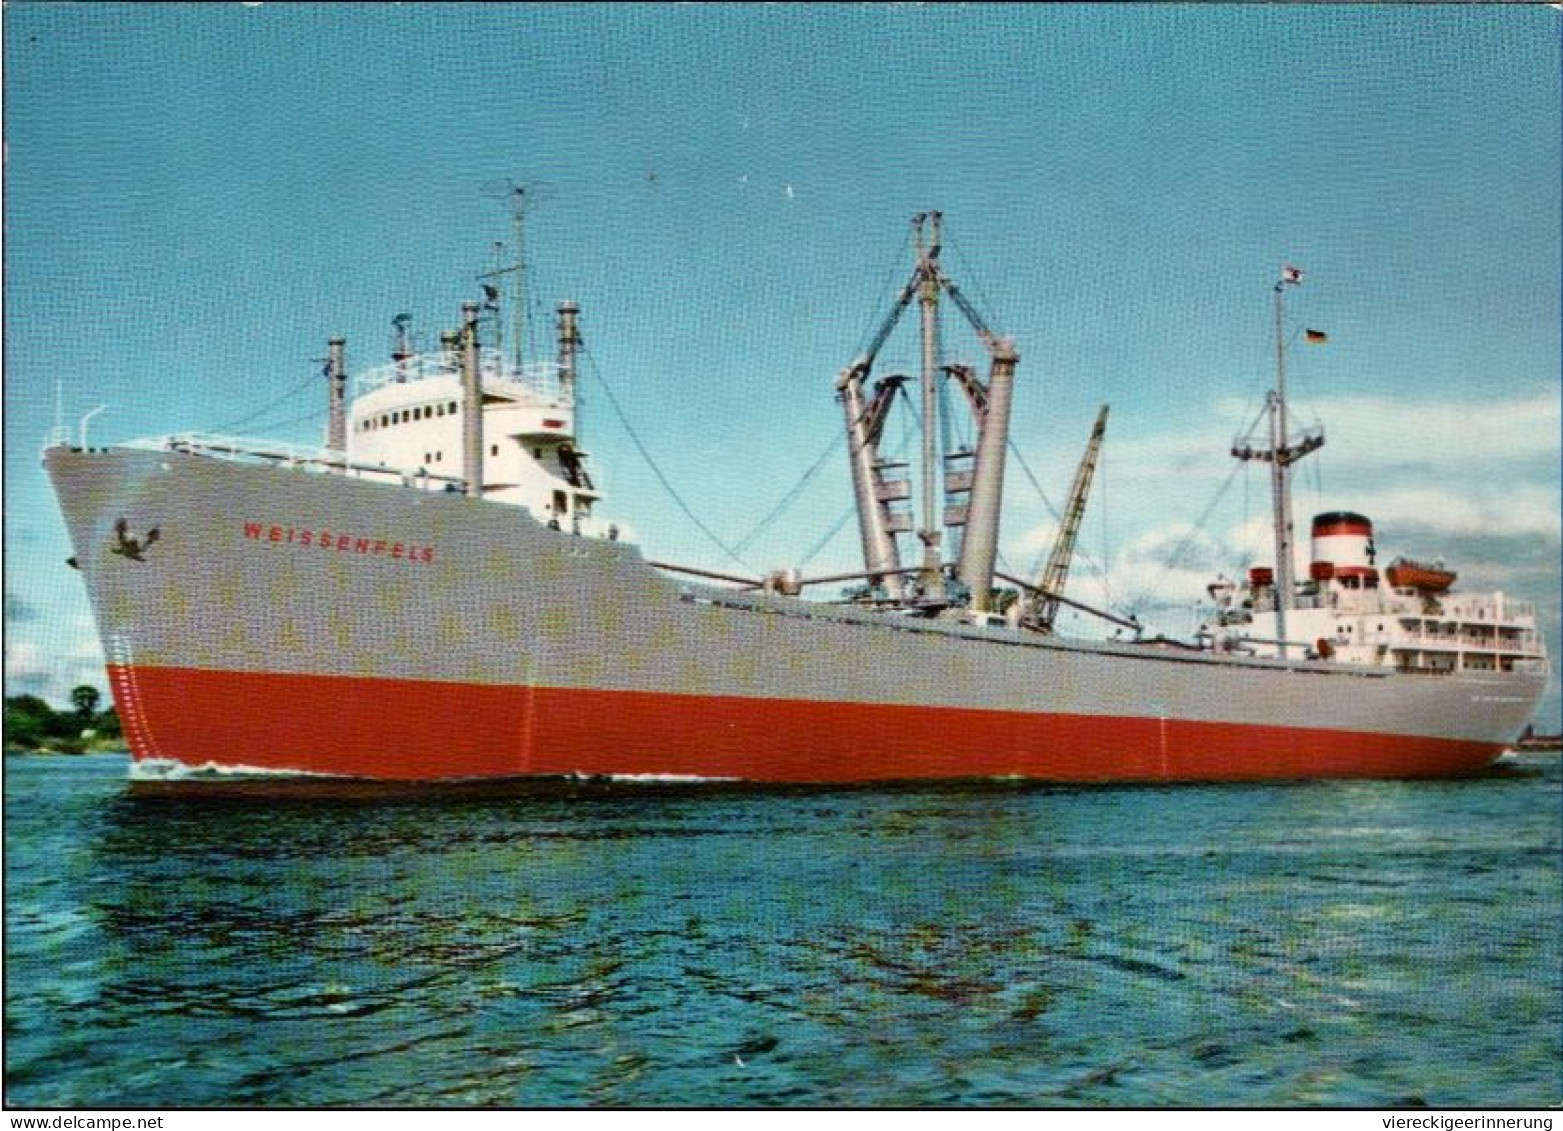 ! Ansichtskarte Ship, DDSG Hansa Bremen, Schiff MS Weissenfels, Frachter - Comercio